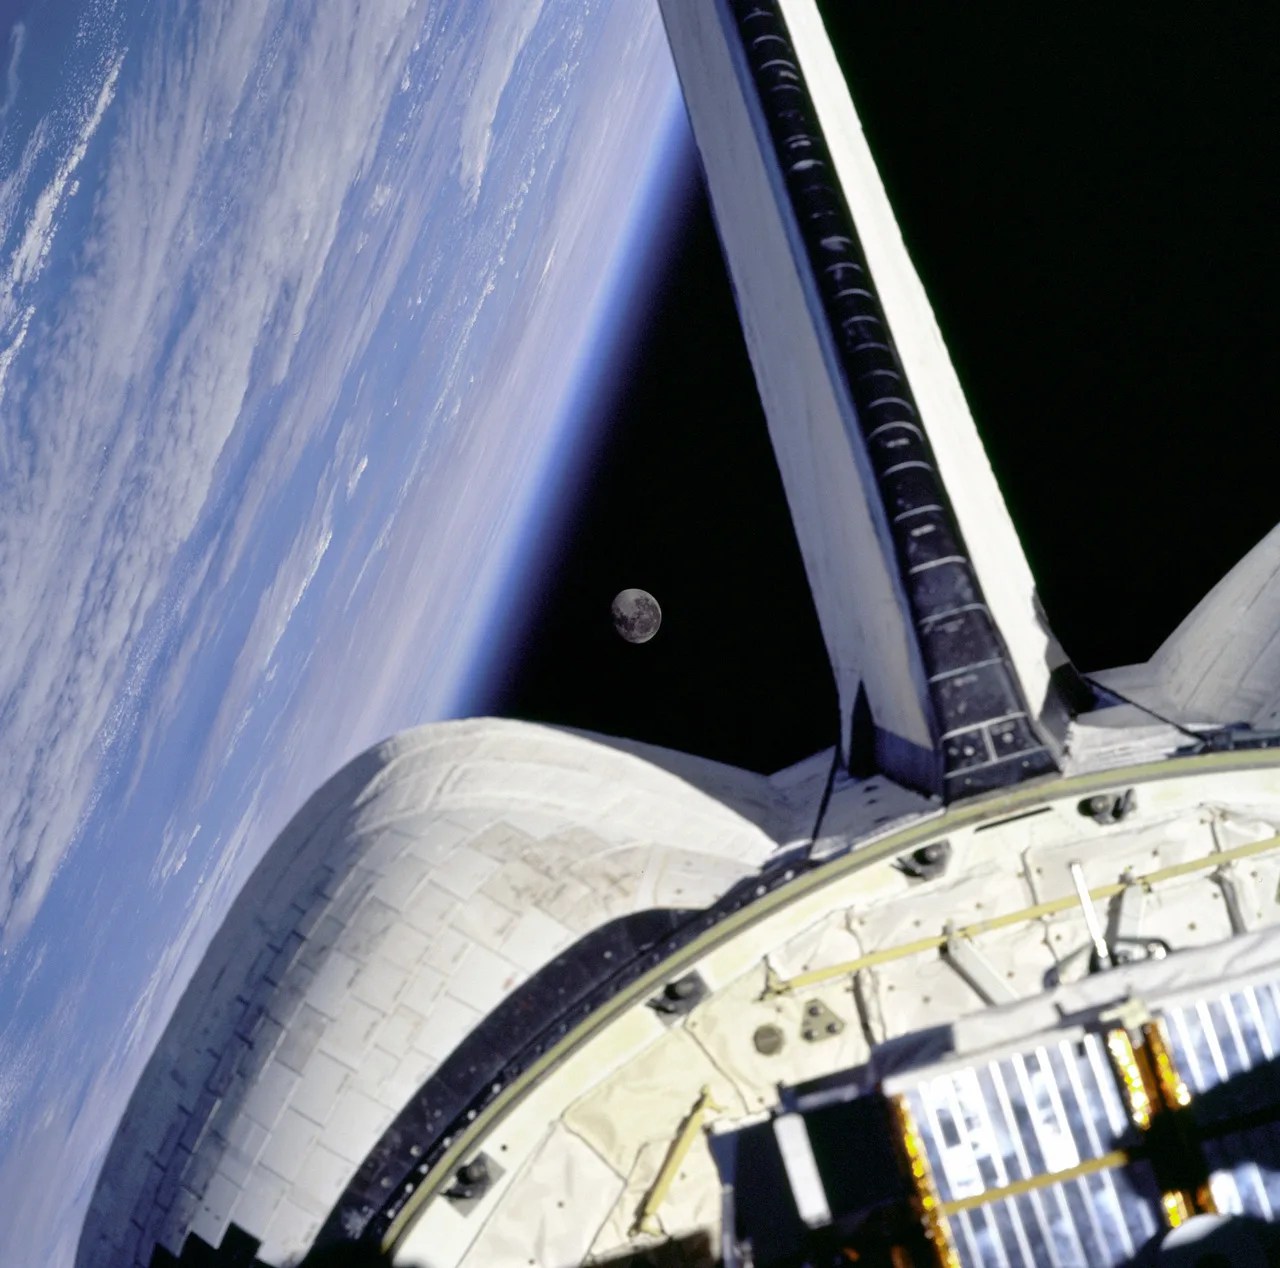 Luna sobre la tierra con el transbordador espacial en primer plano.